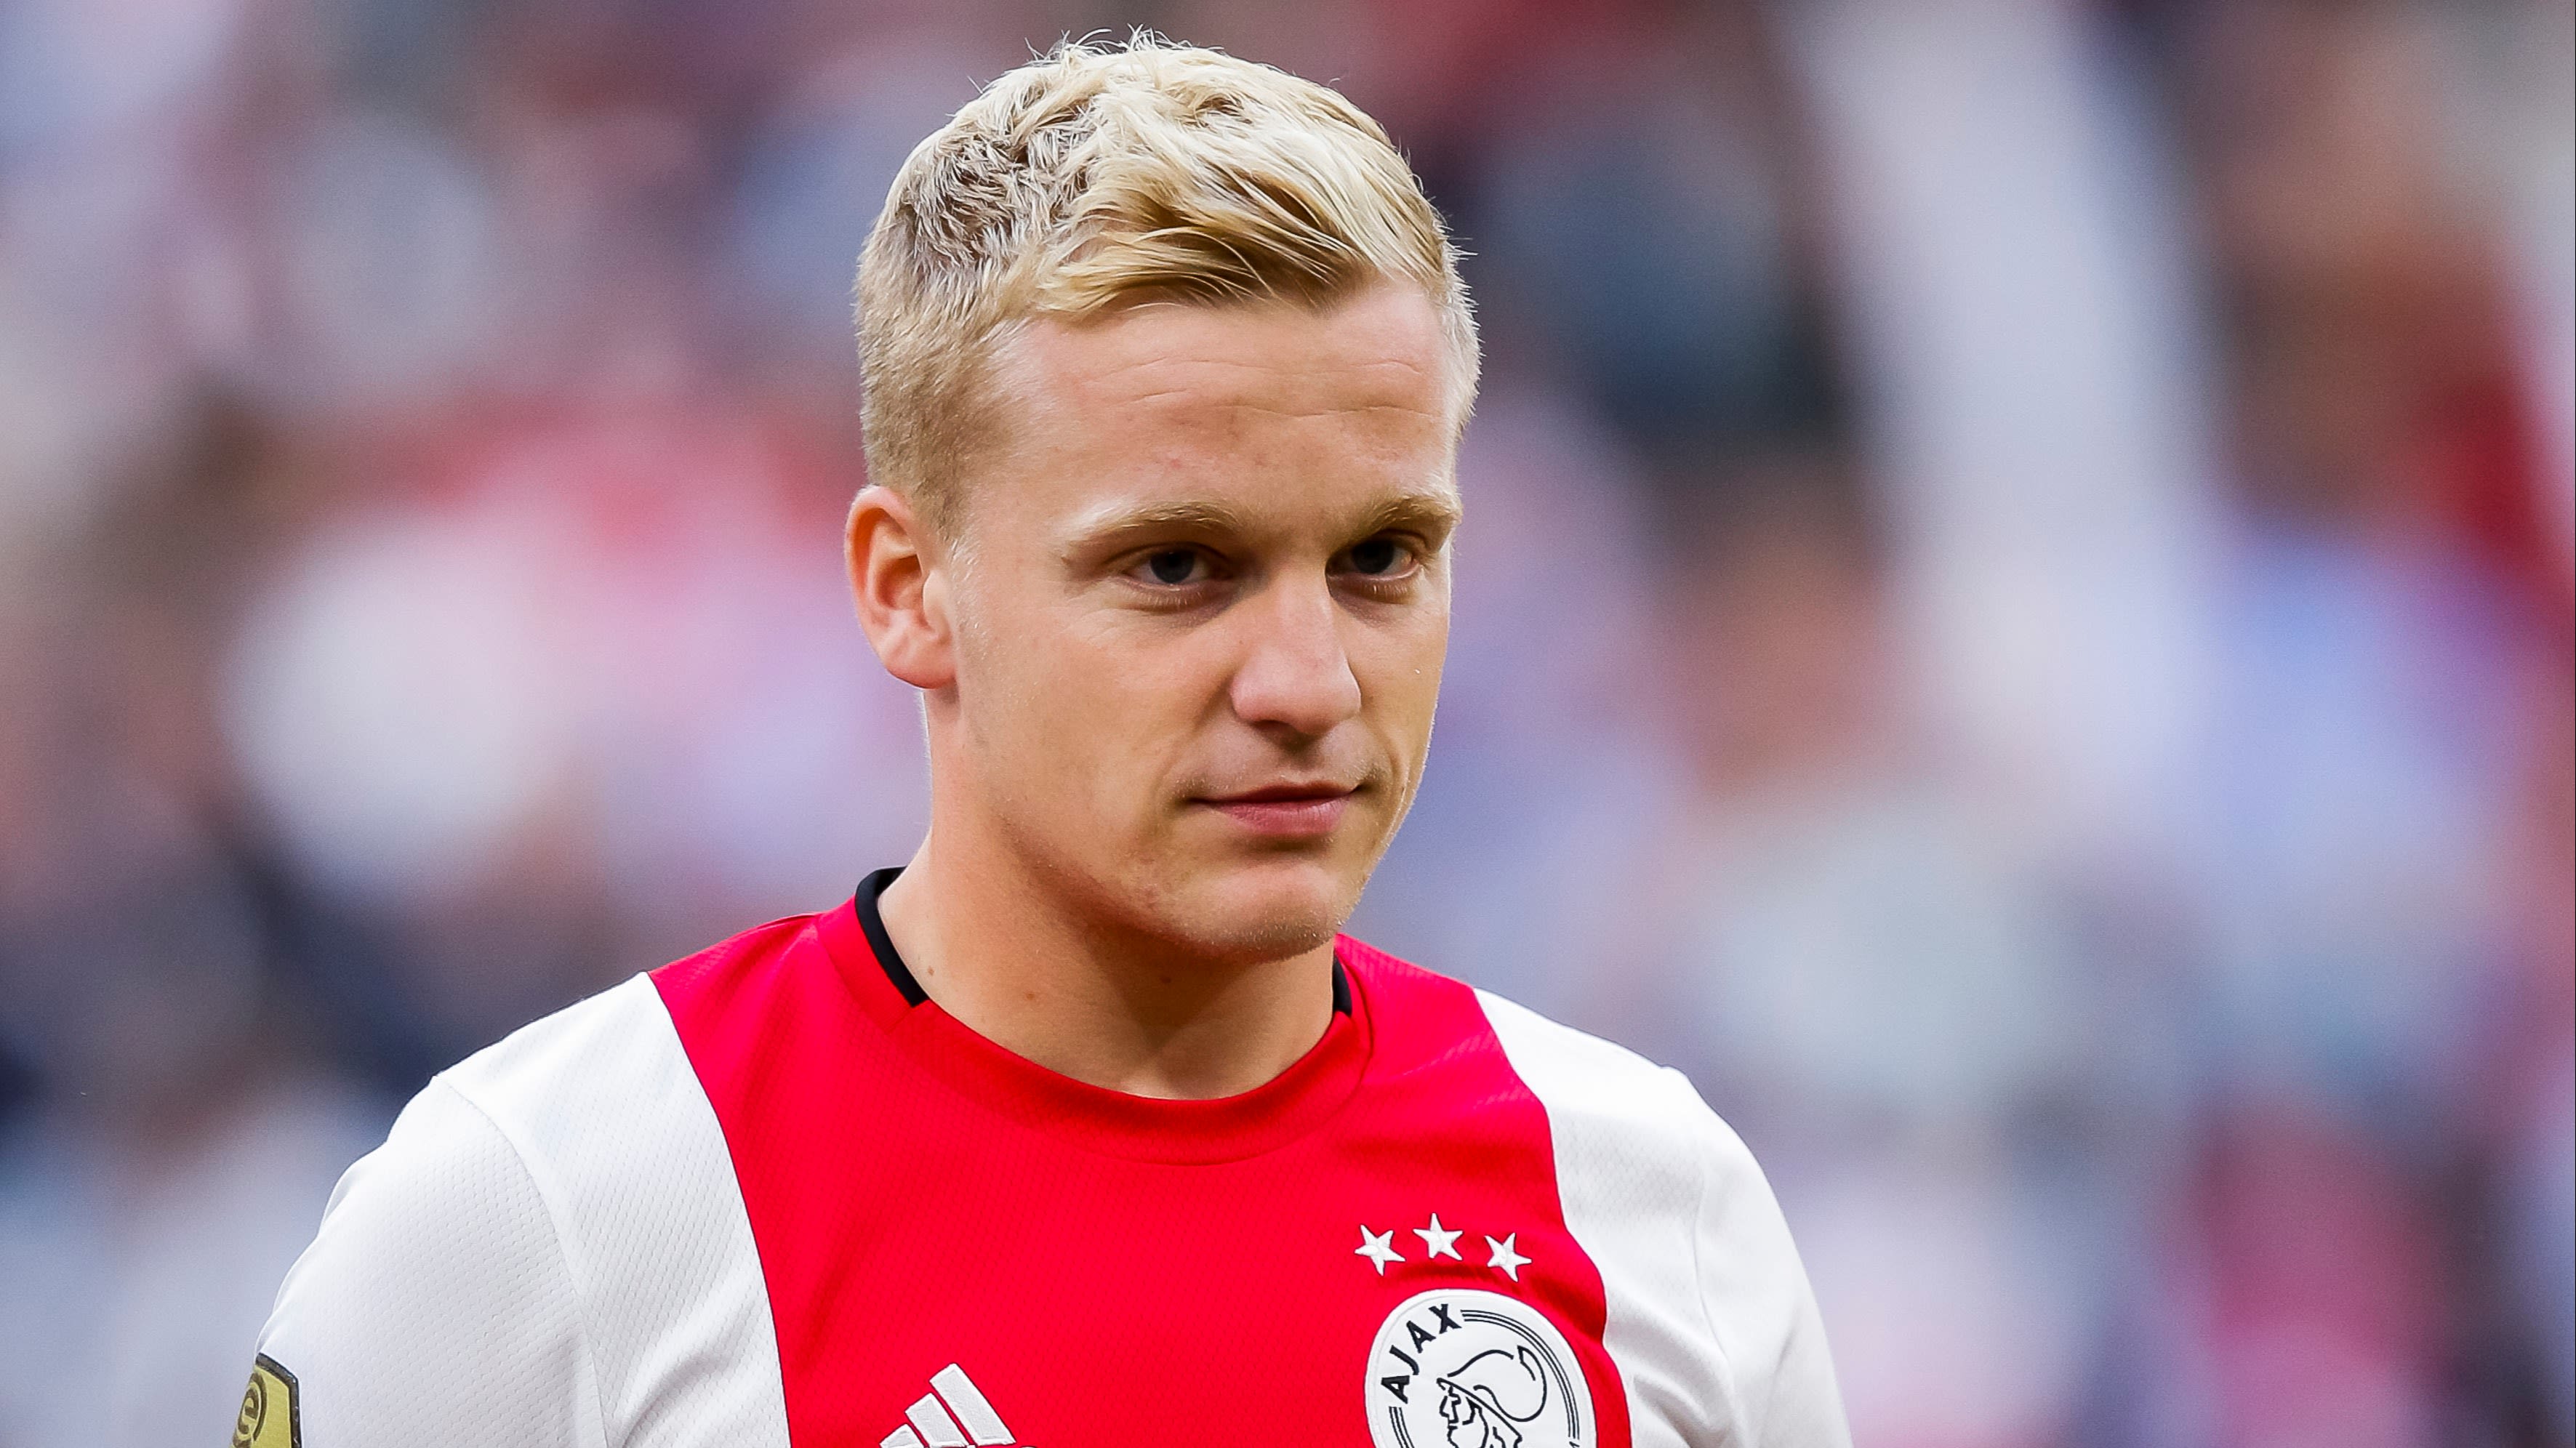 Donny van de Beek stellig: 'Ik blijf dit seizoen bij Ajax'